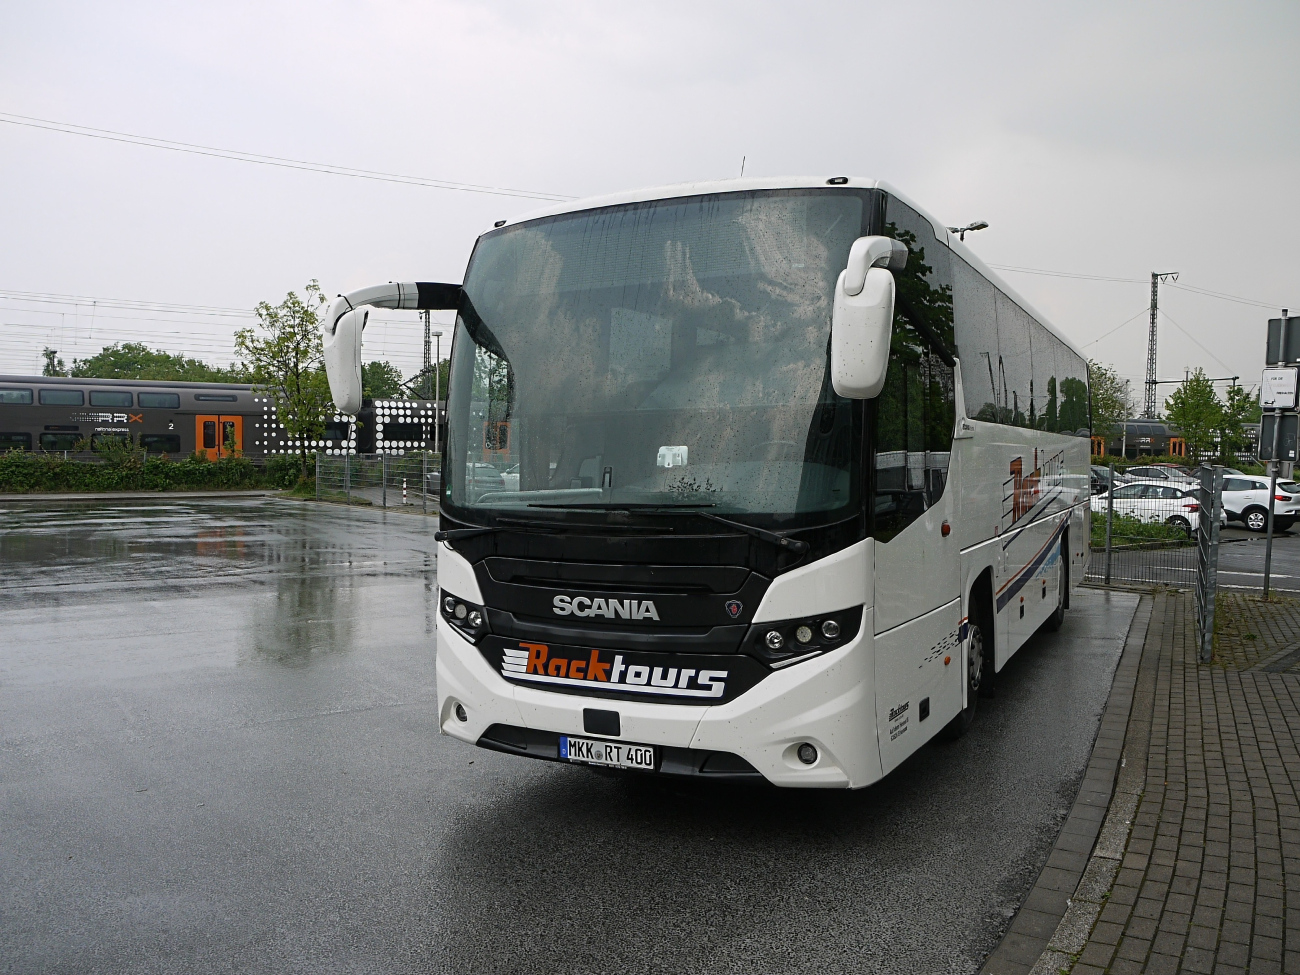 Gelnhausen, Scania Interlink MD 10.9 # MKK-RT 400